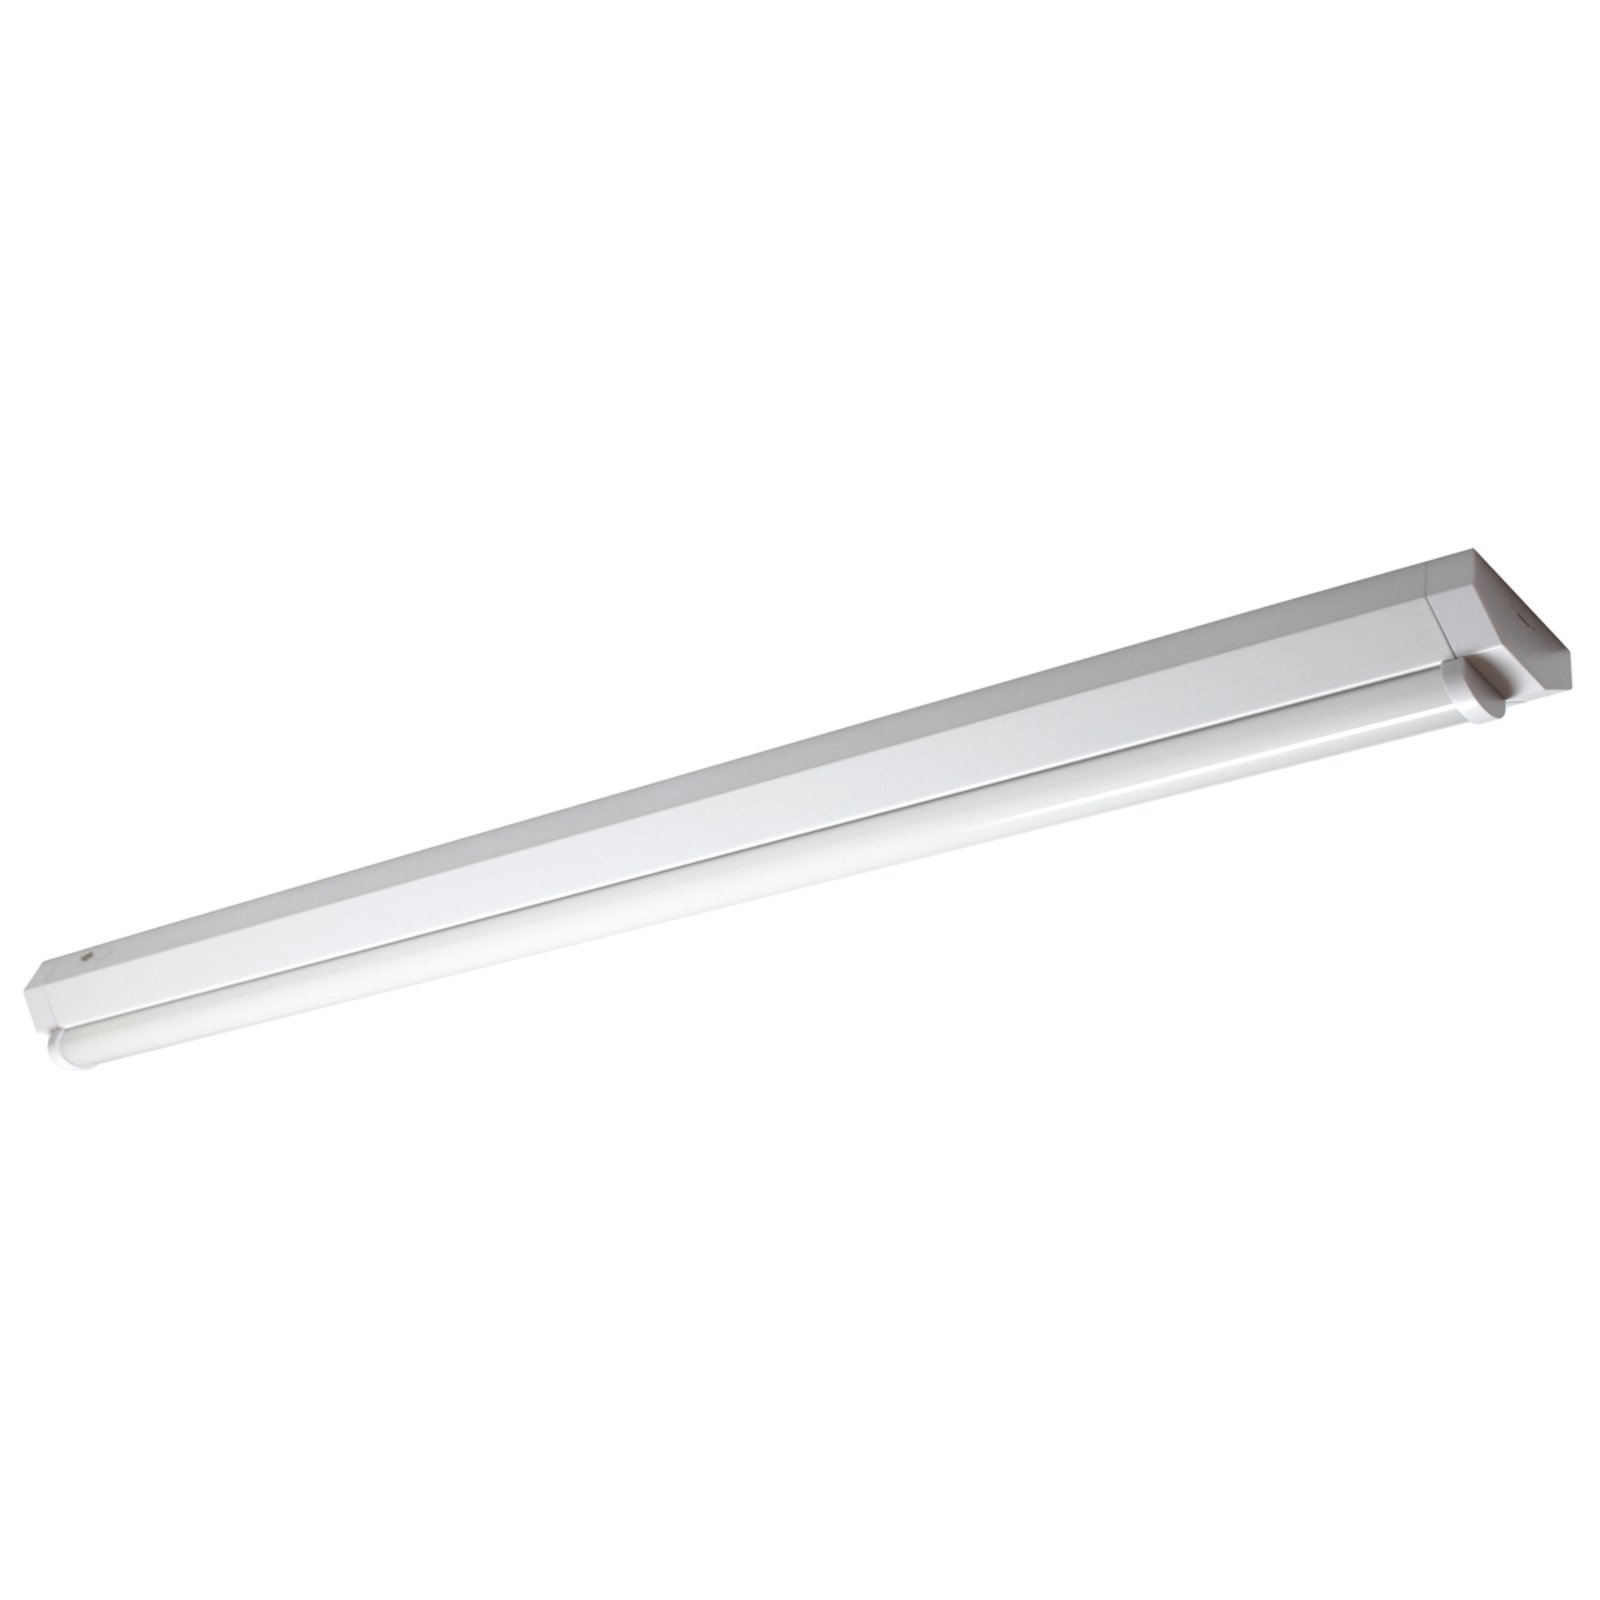 Univerzalna LED stropna svjetiljka Basic 1 - 150 cm